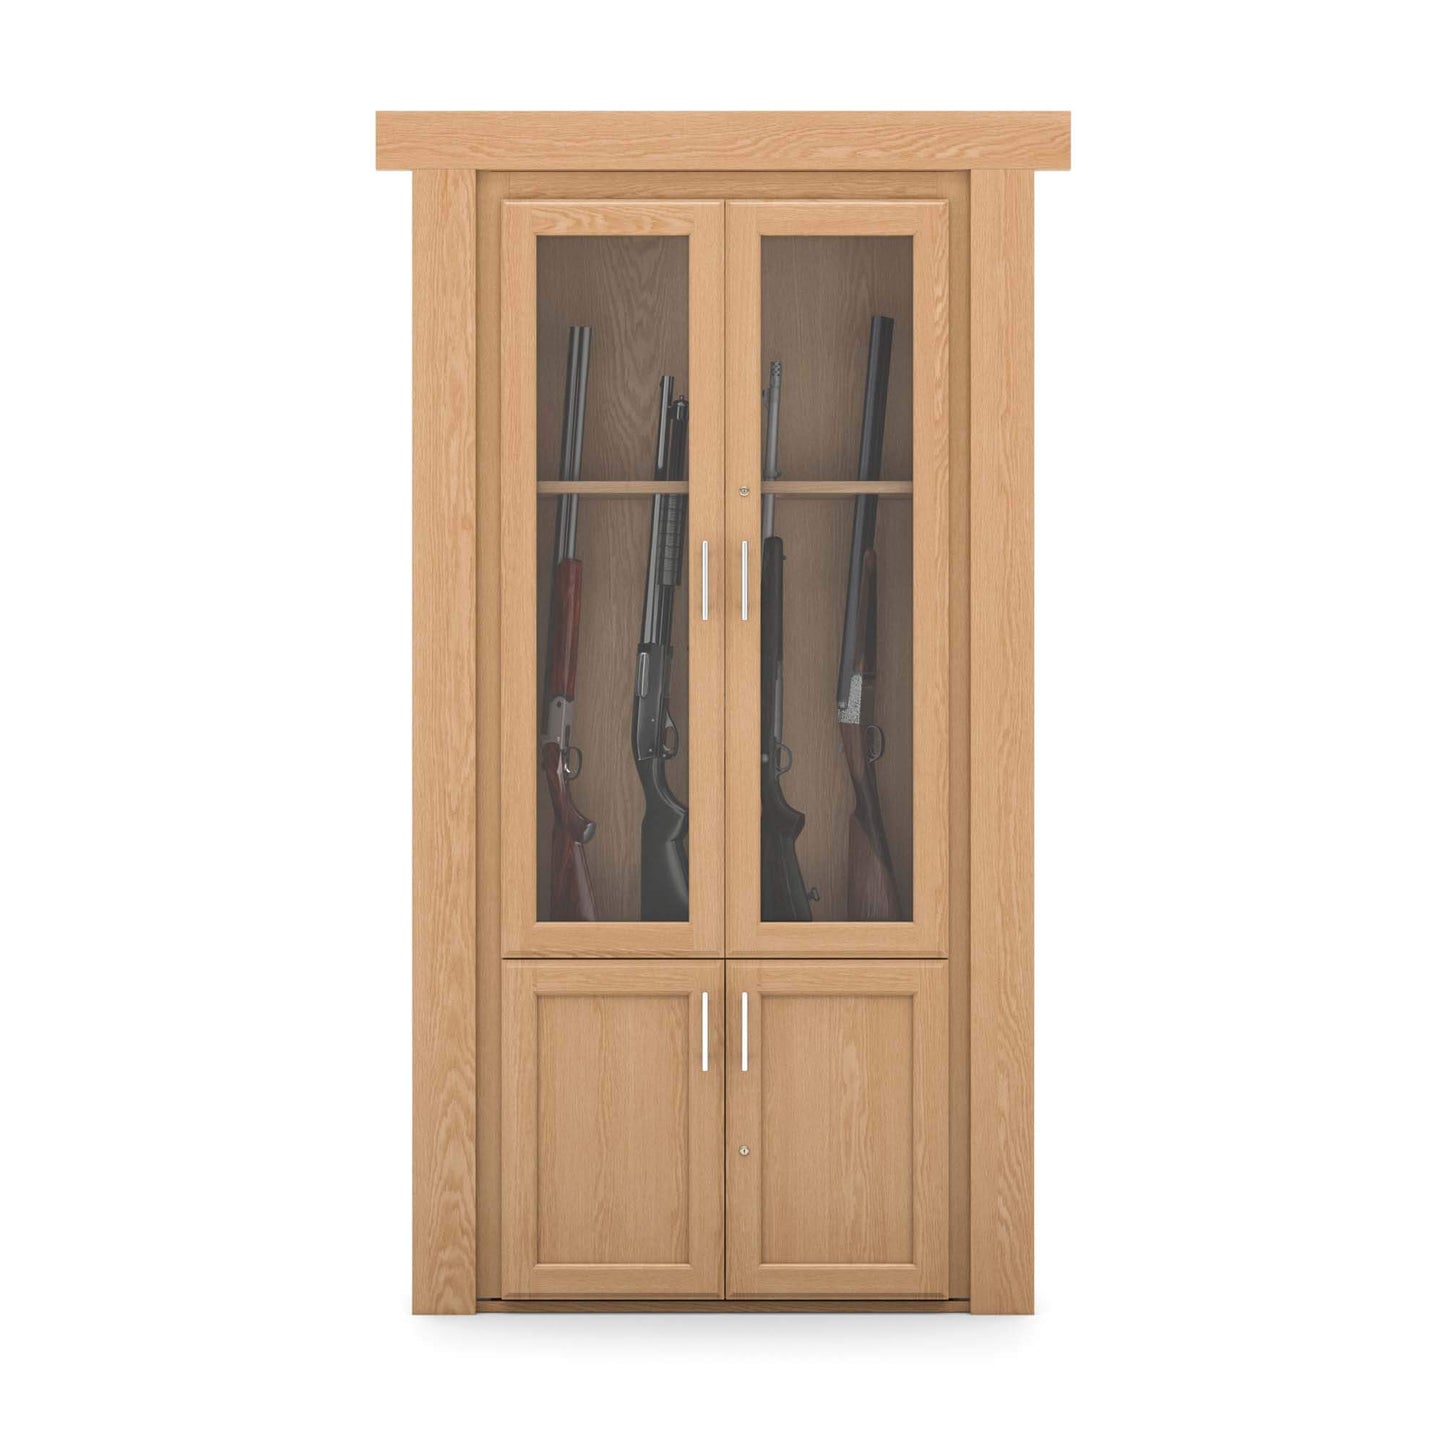 Hidden Gun Cabinet Door